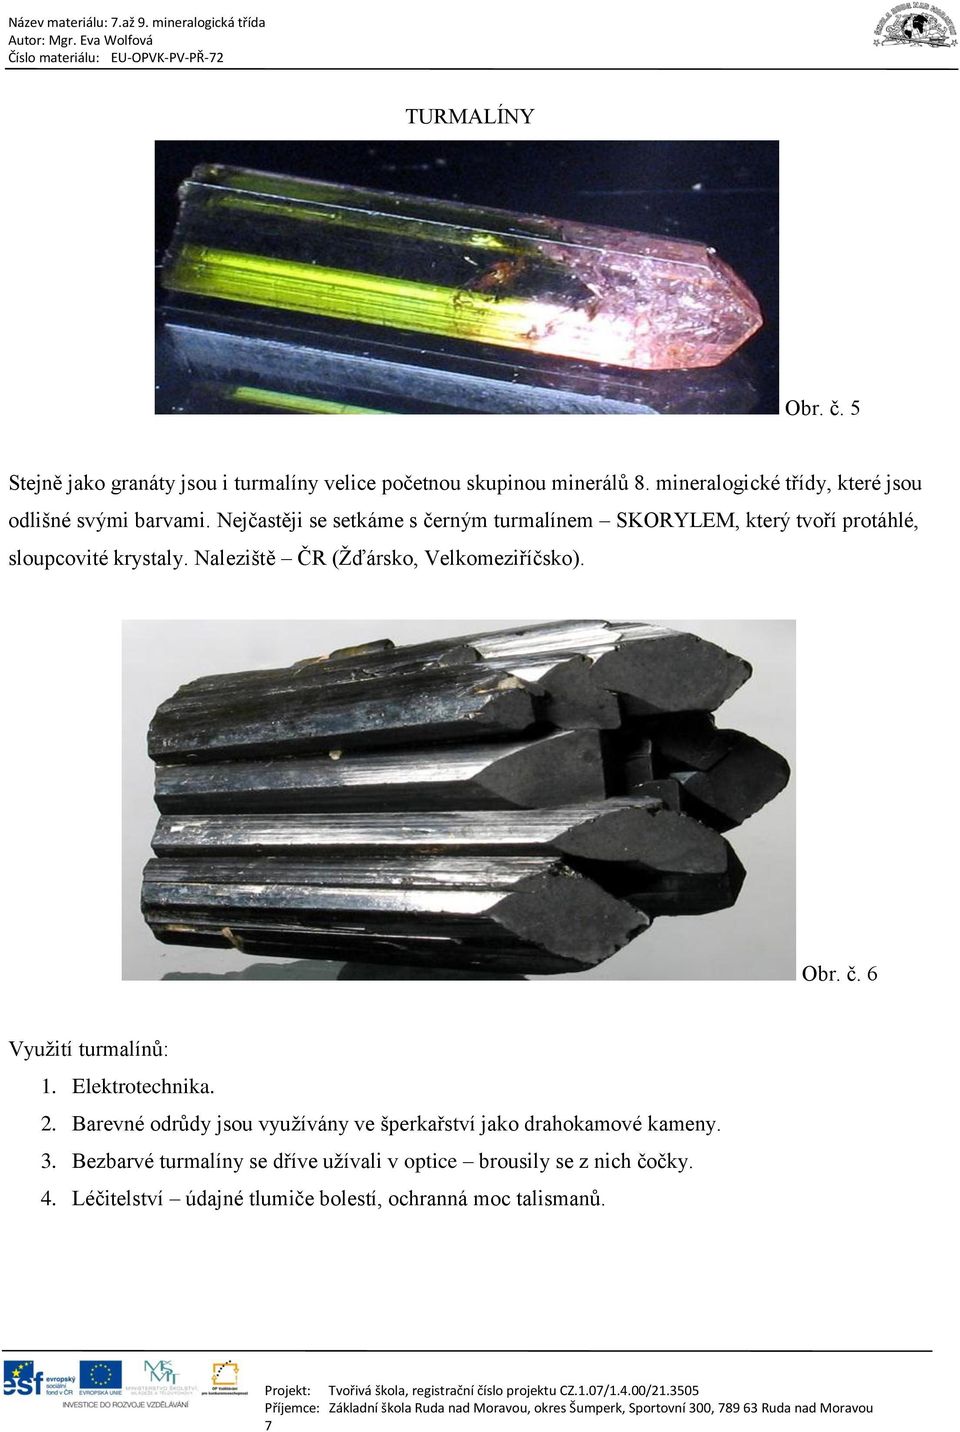 Nejčastěji se setkáme s černým turmalínem SKORYLEM, který tvoří protáhlé, sloupcovité krystaly. Naleziště ČR (Žďársko, Velkomeziříčsko).